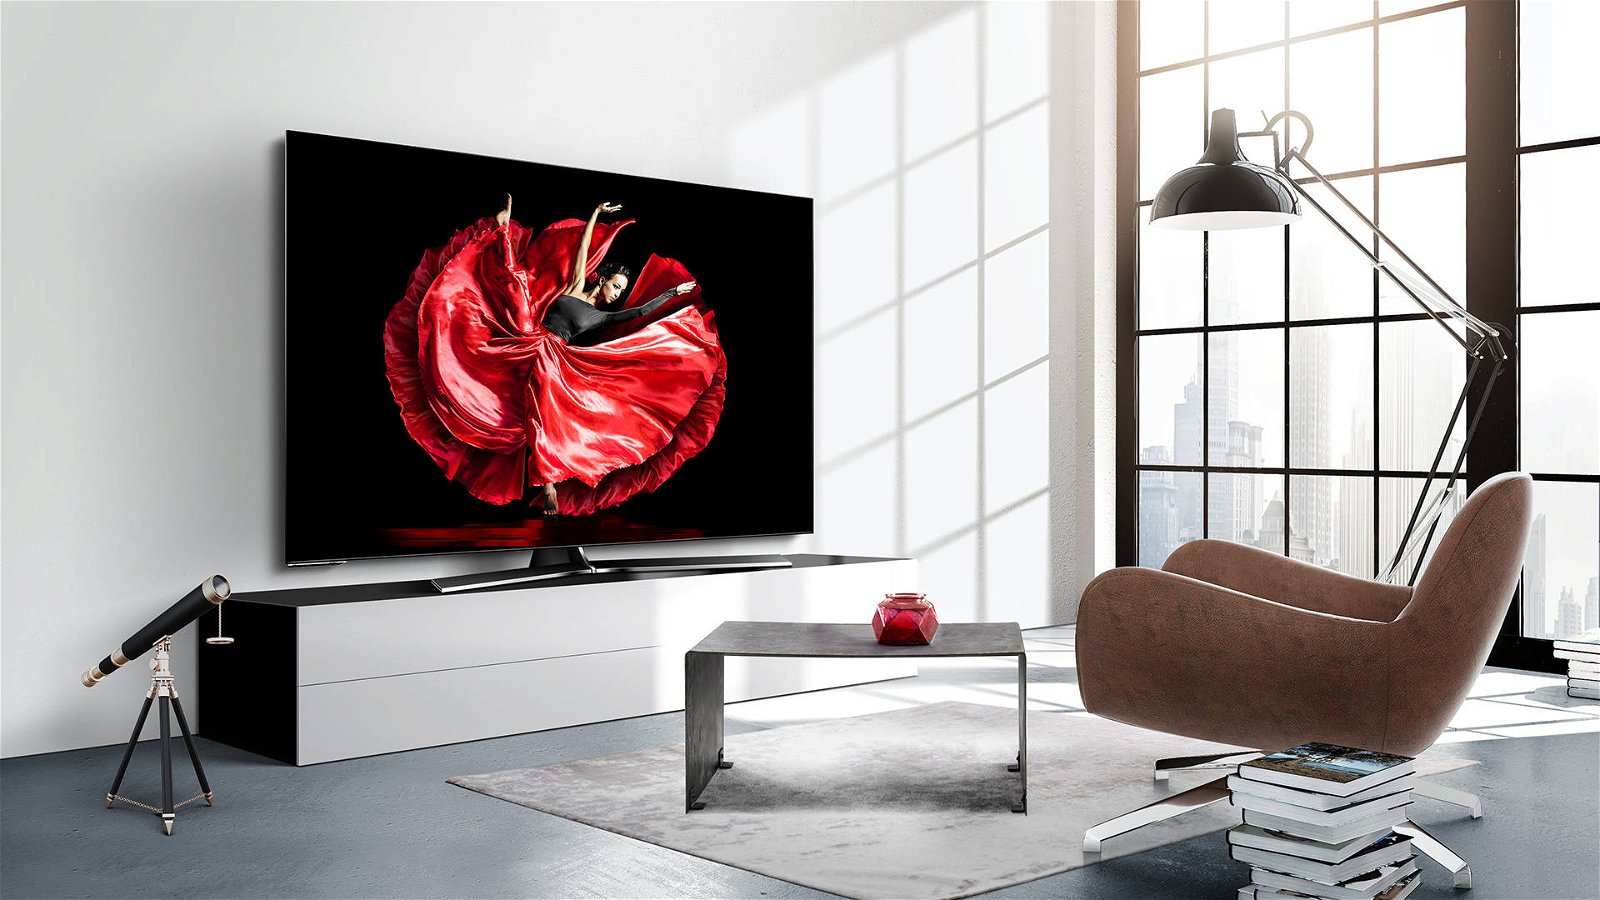 Immagine di Hisense O8B, arriva in Italia il TV OLED da 55 pollici dal prezzo competitivo